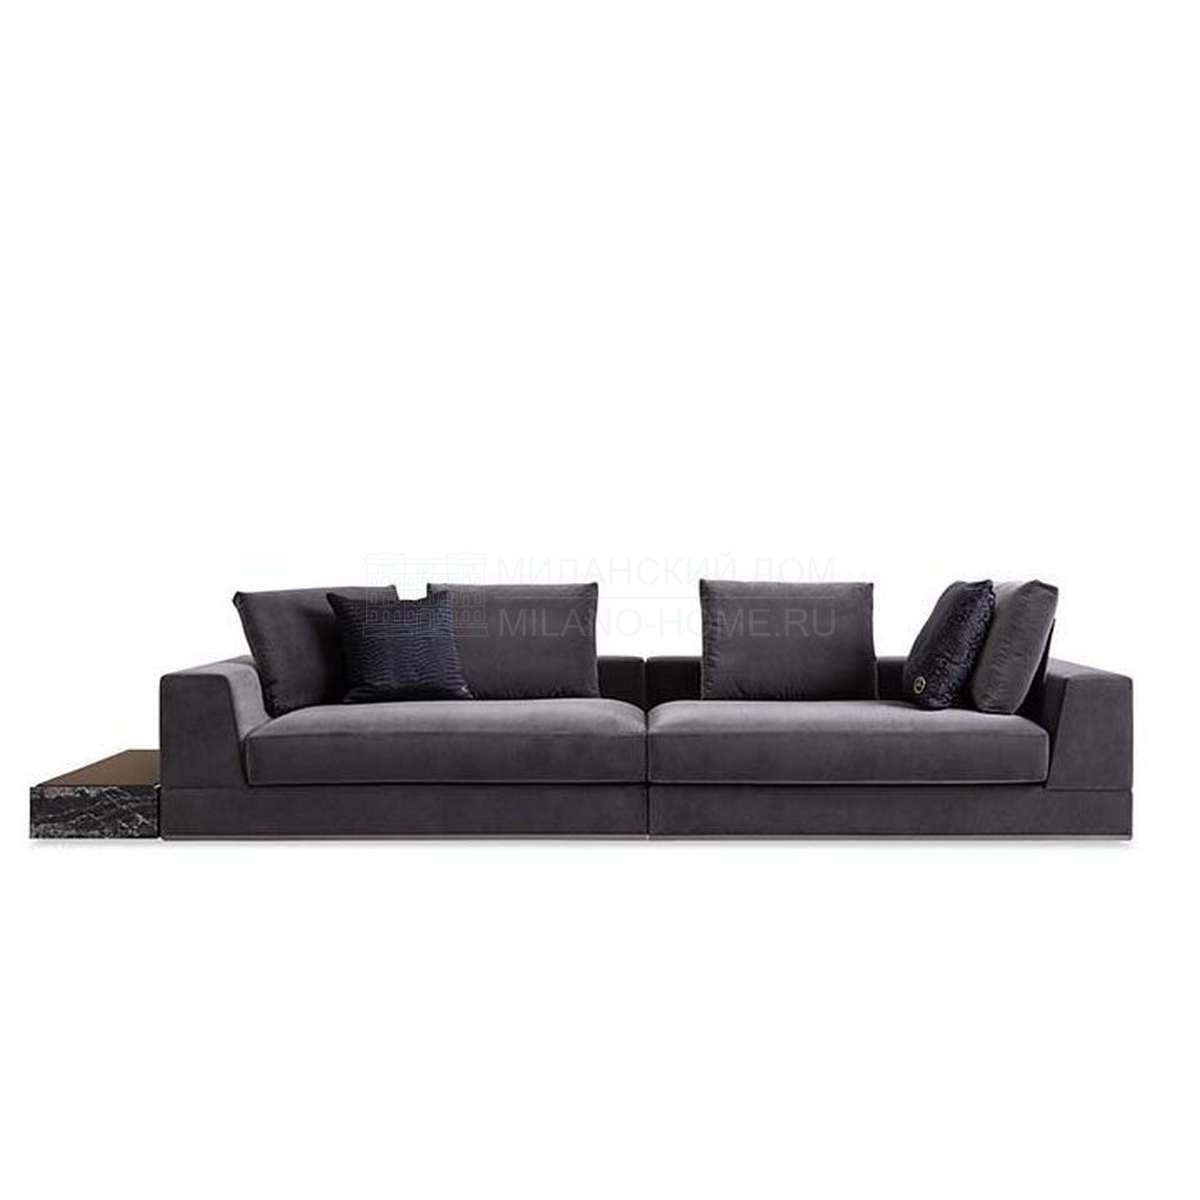 Прямой диван Studio 54 sofa  из Италии фабрики FENDI Casa